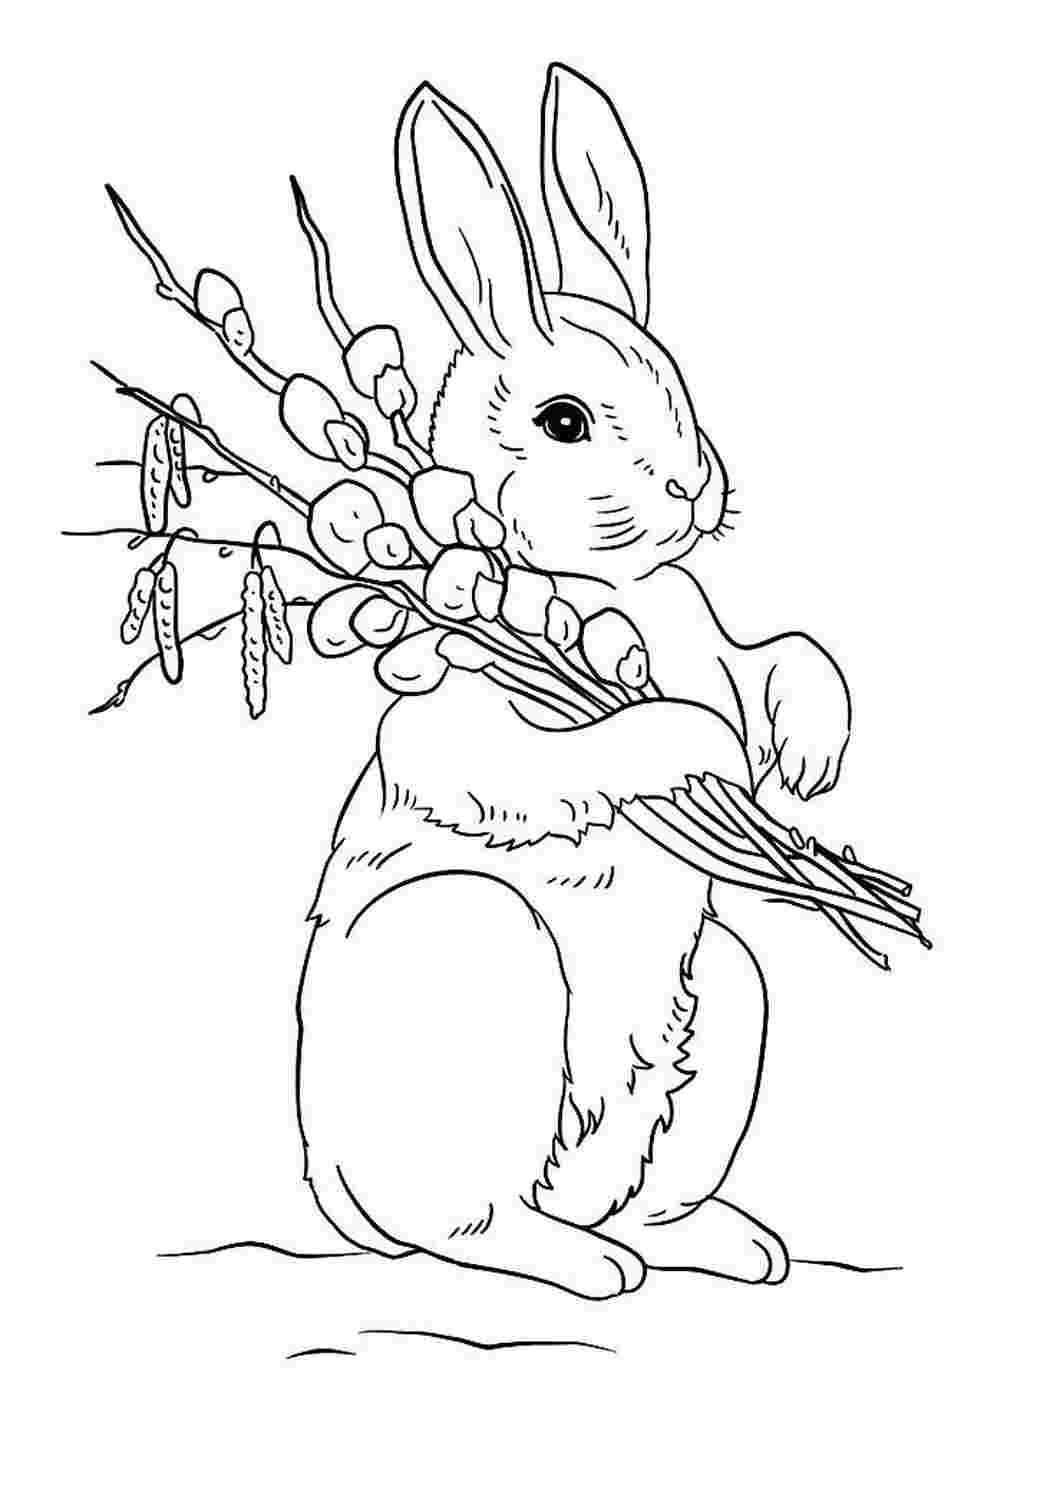 Пасхальный кролик раскраска для детей